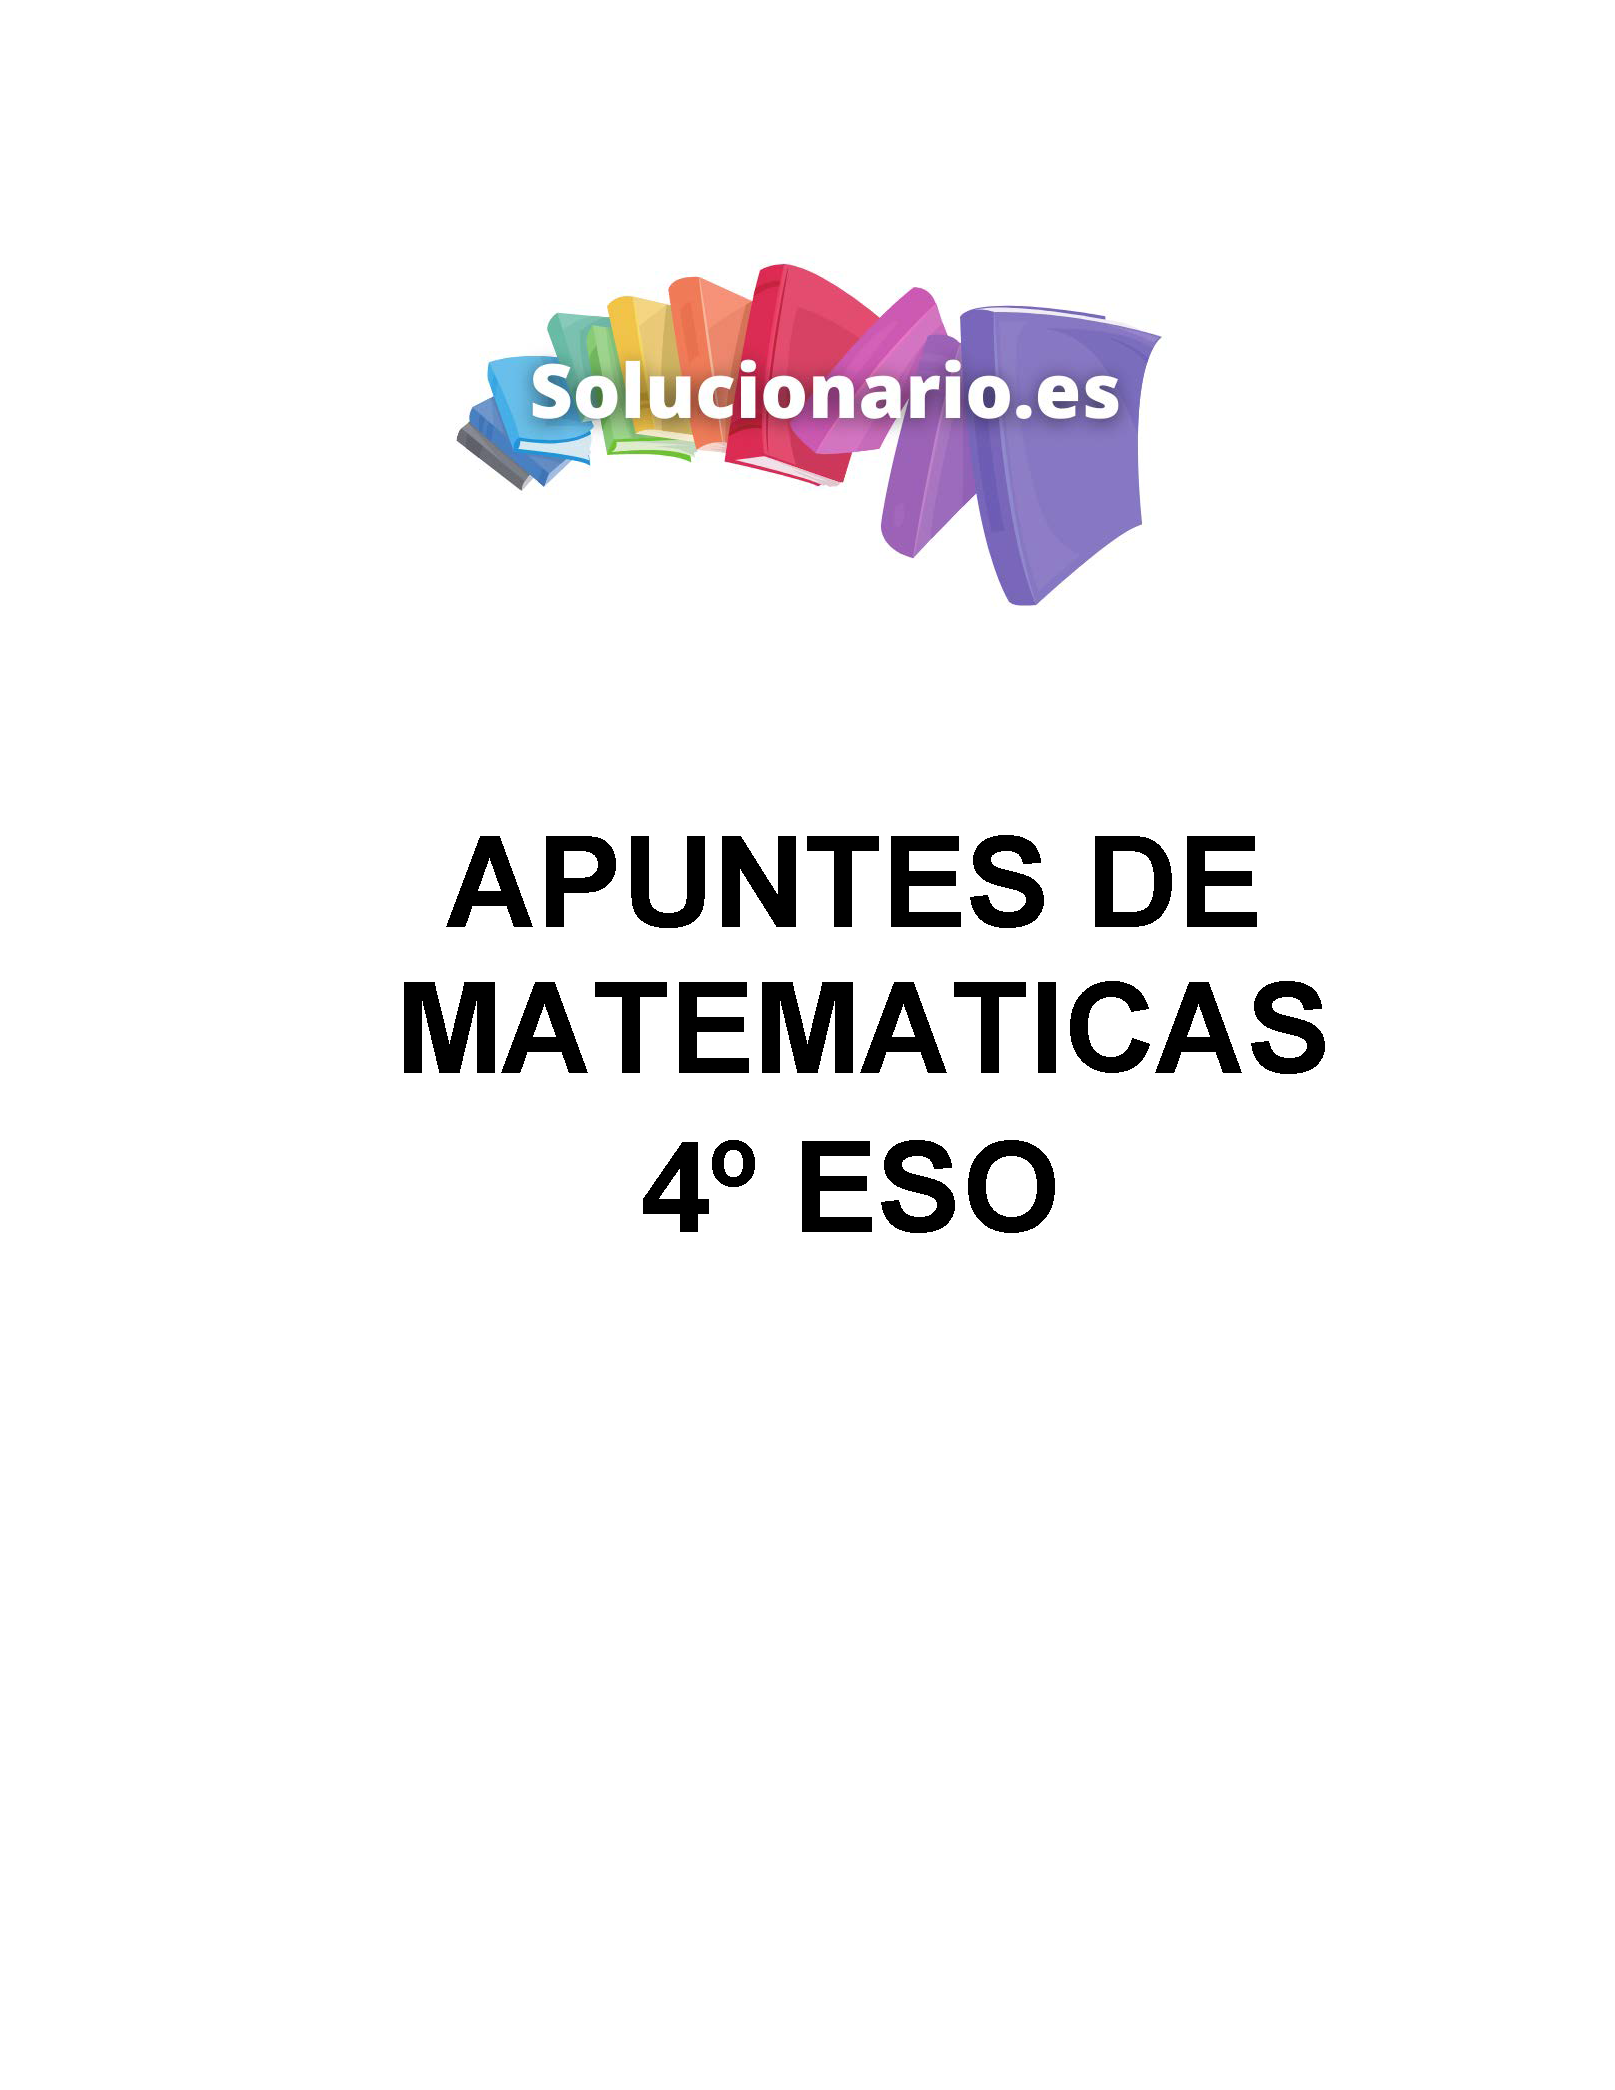 Apuntes Matemáticas Estadística 4 ESO 2020 / 2021